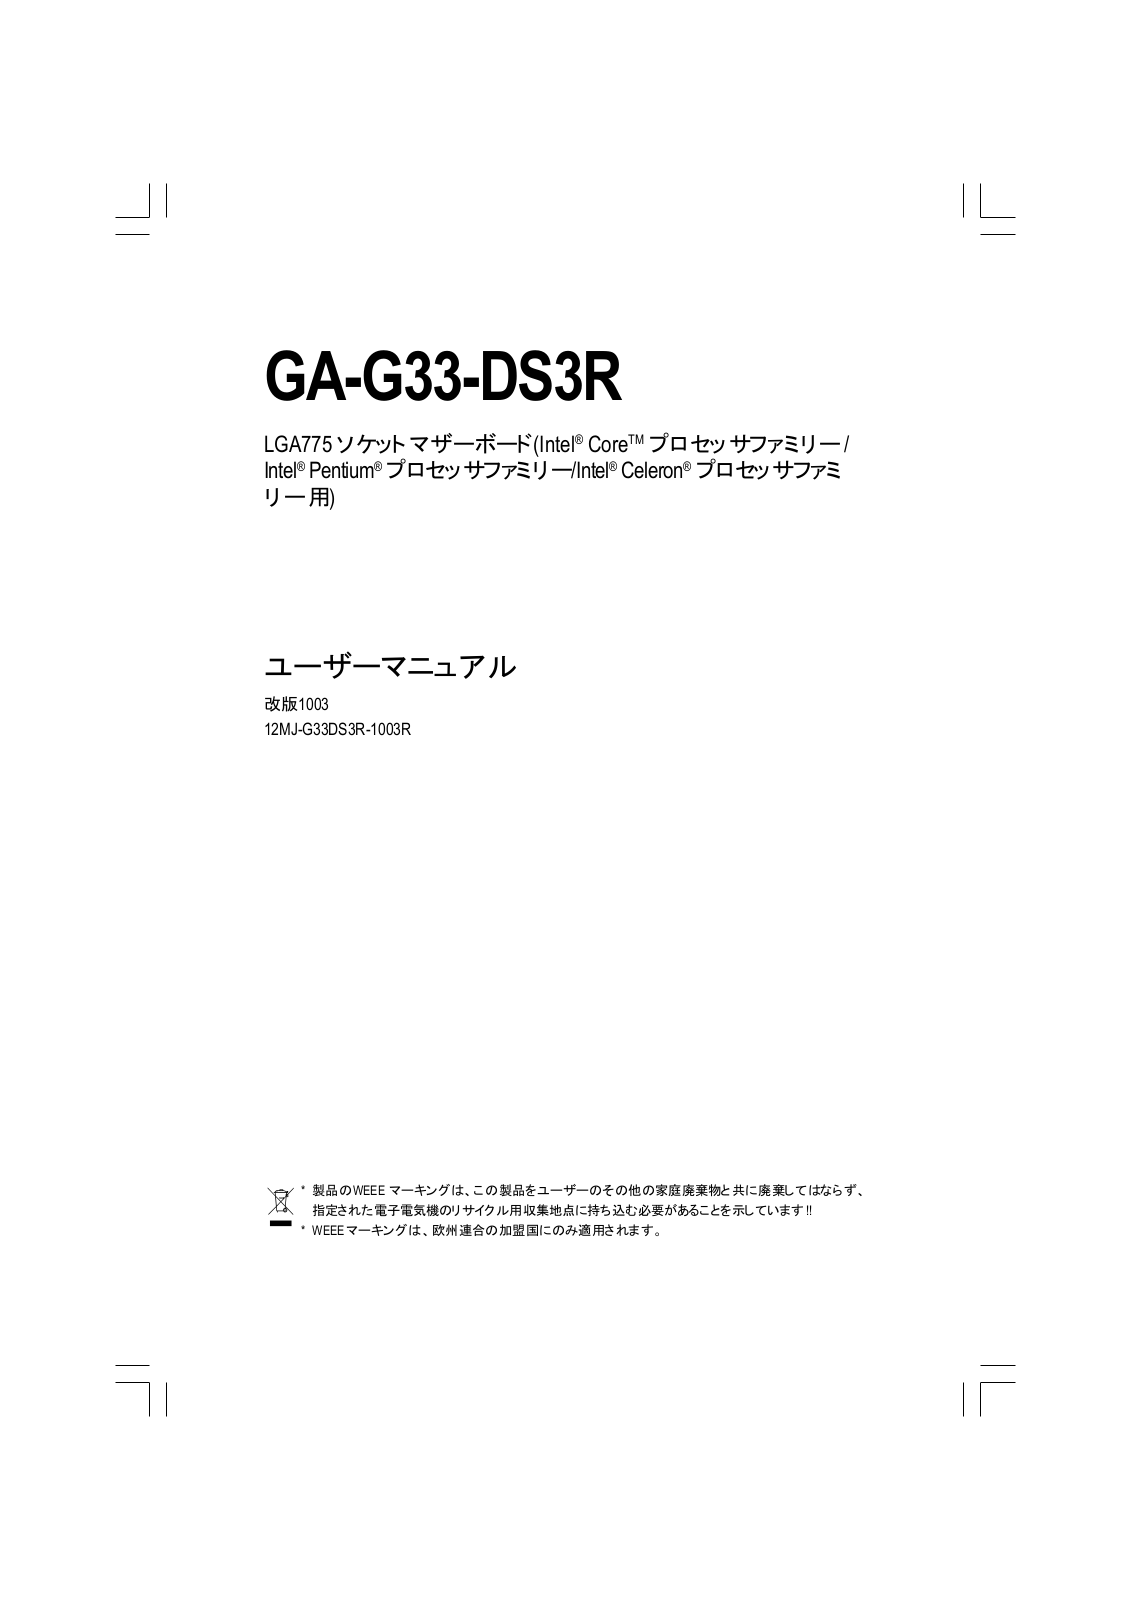 Gigabyte GA-G33-DS3R Manual